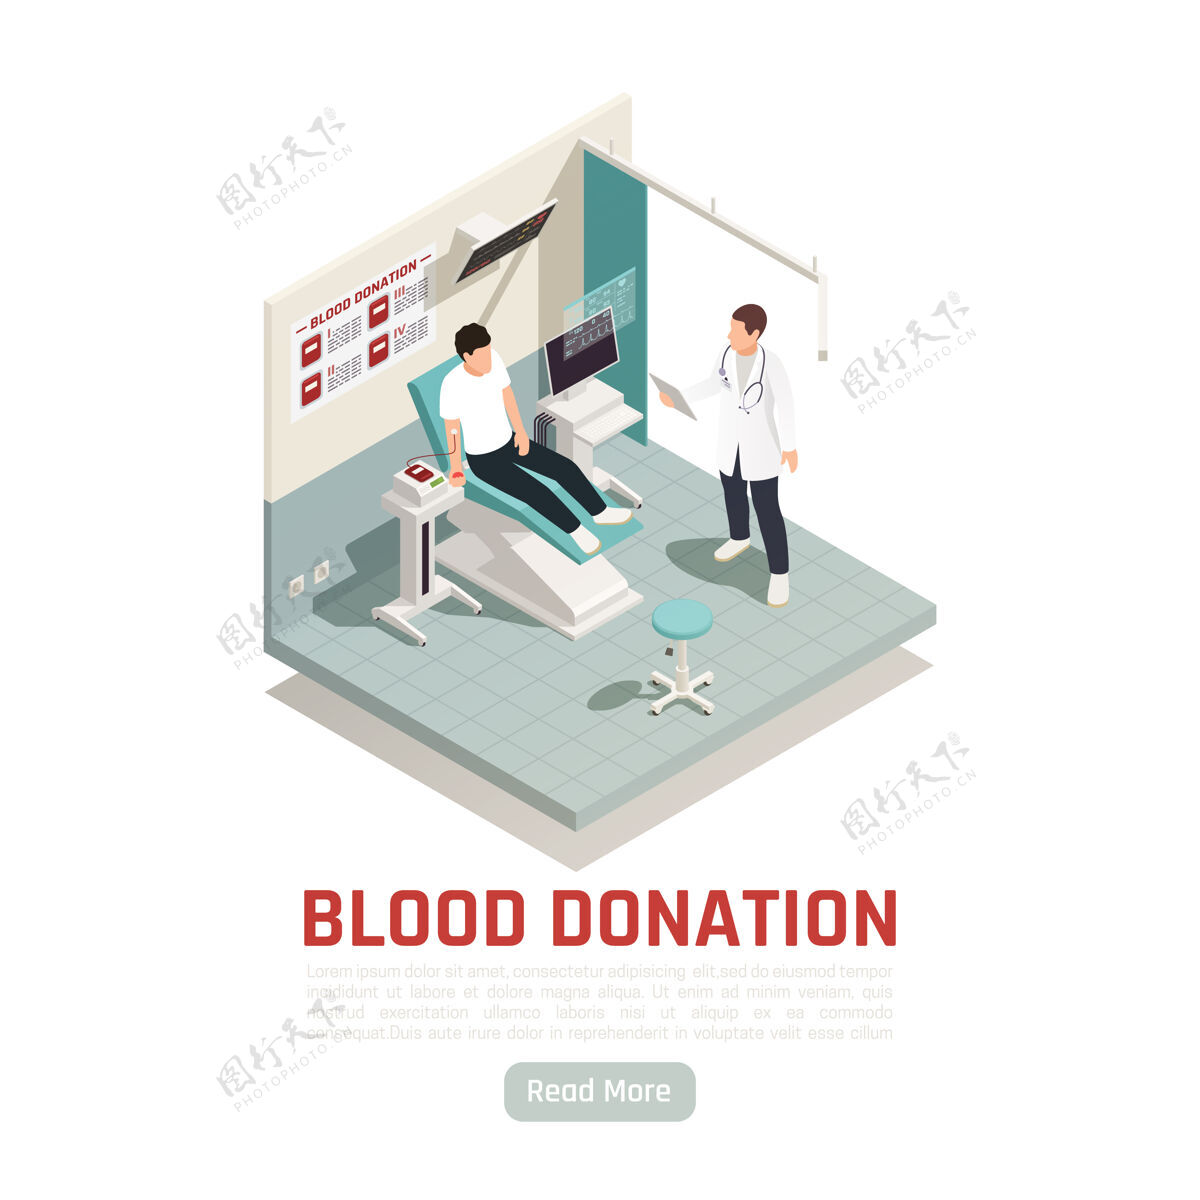 样本文本慈善捐赠志愿等轴测插图与阅读更多按钮和可编辑的文字与献血过程文本志愿者等距